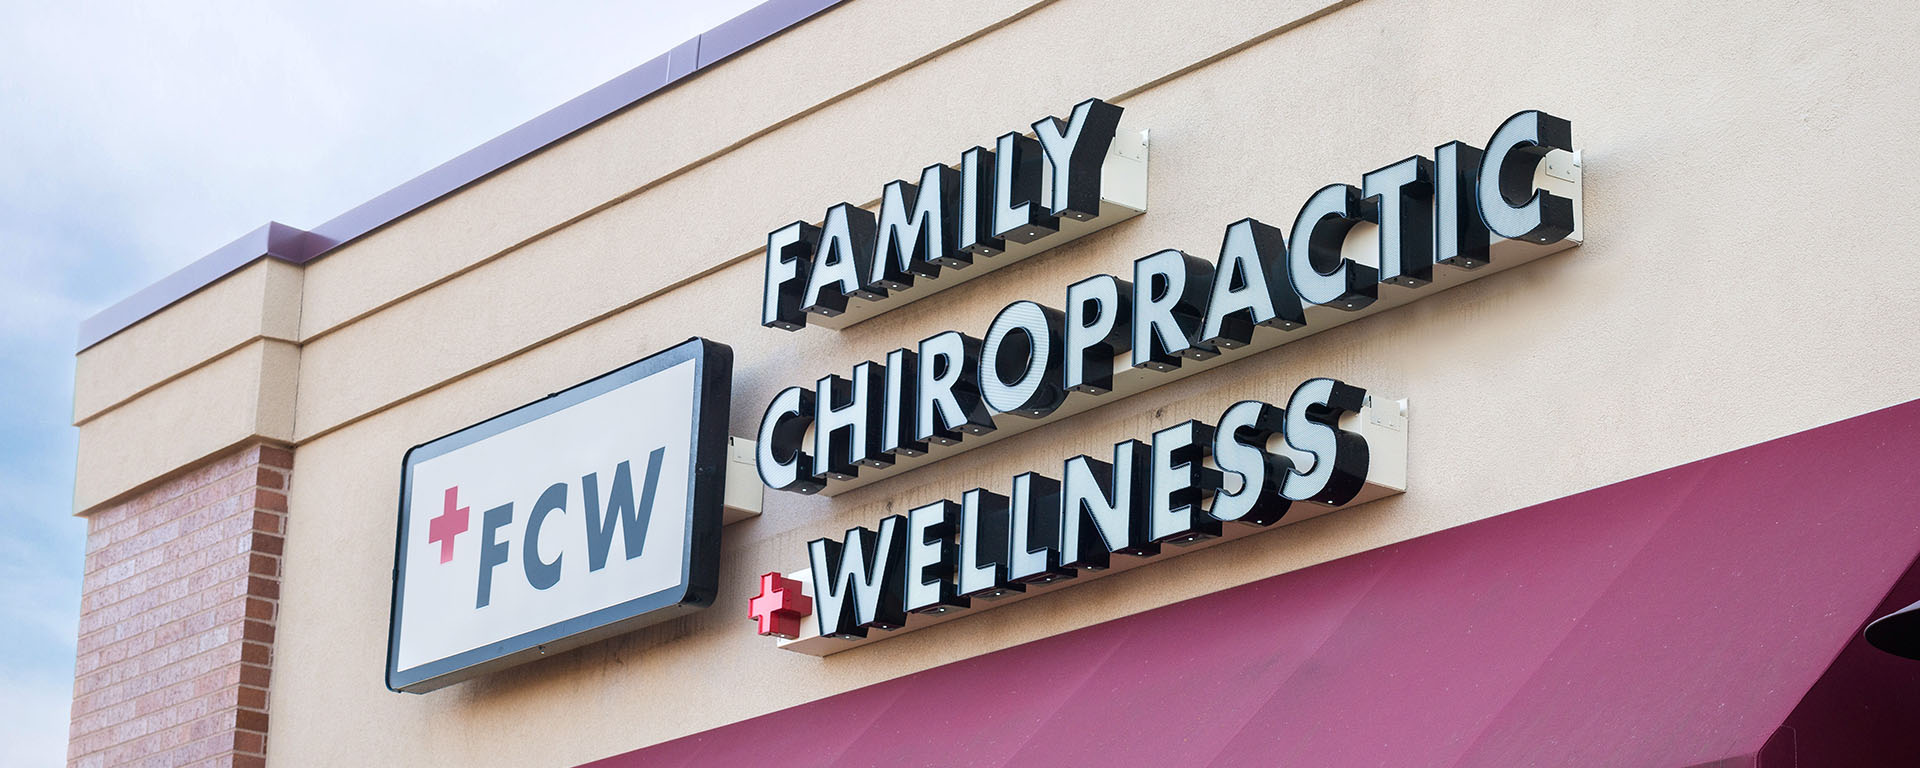 Family Chiropractic + Wellness